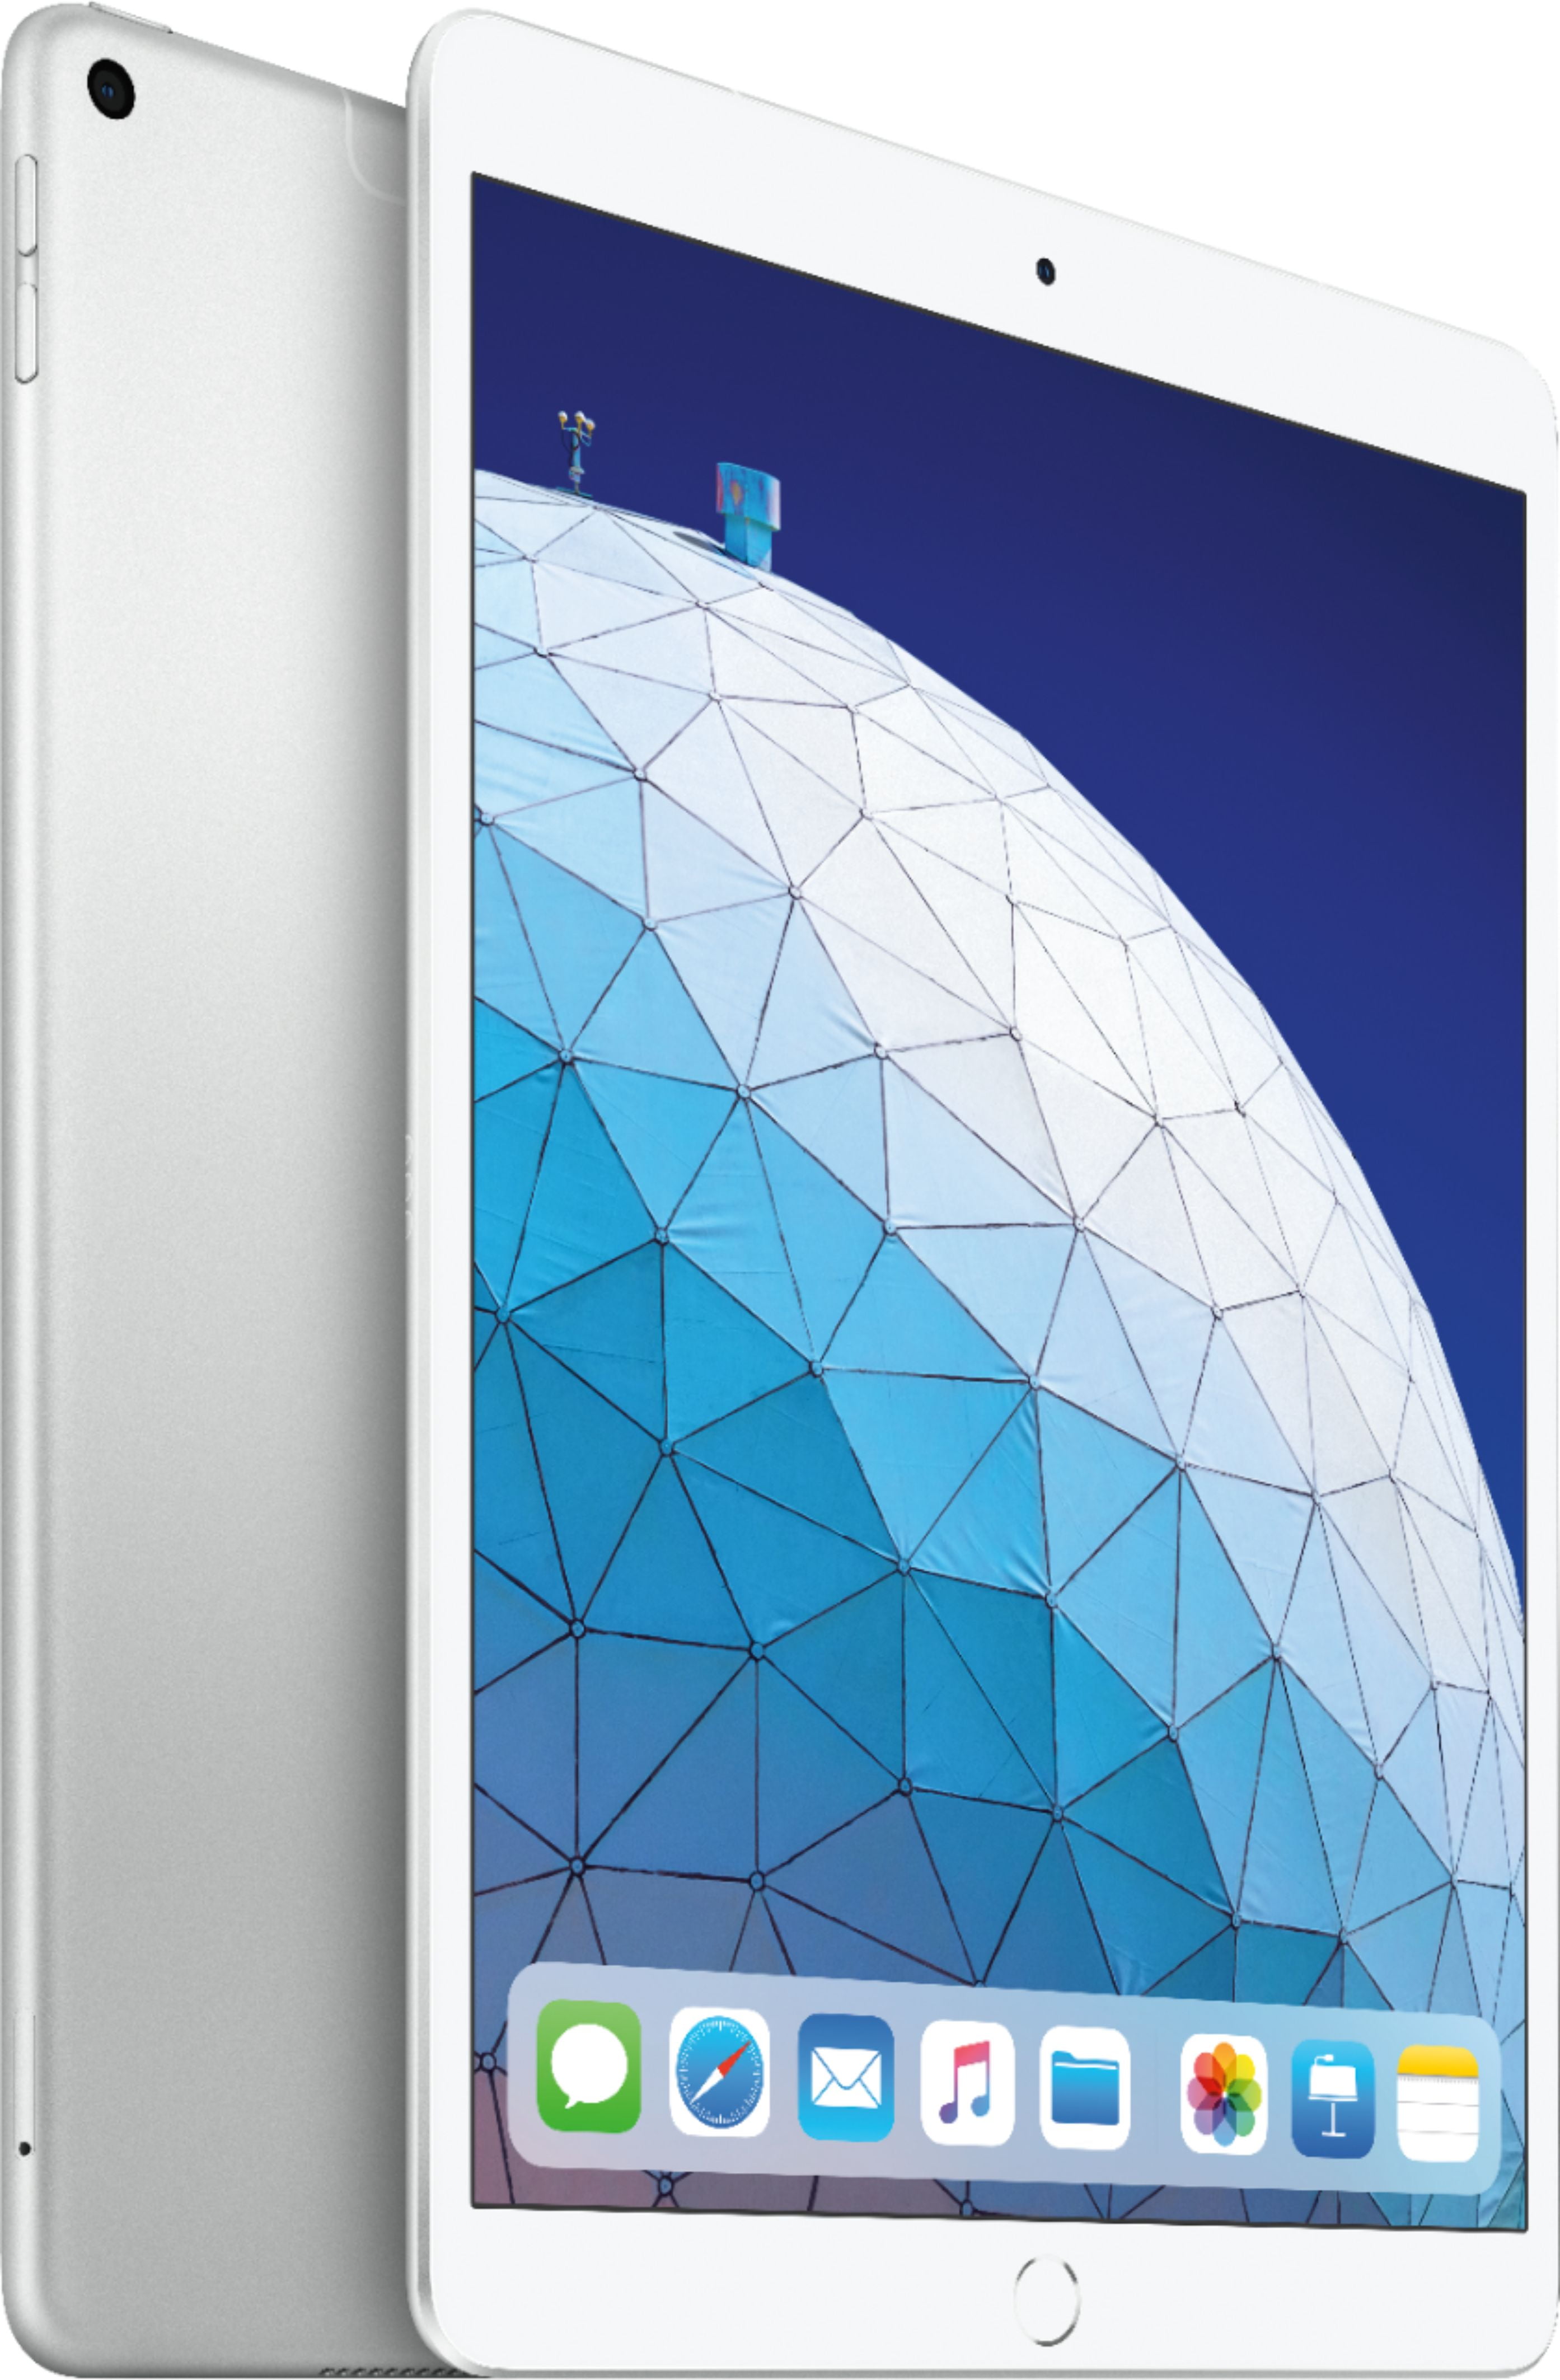 APPLE Apple iPad Air 4 64 Gb Wifi silver - Reacondicionado Grado